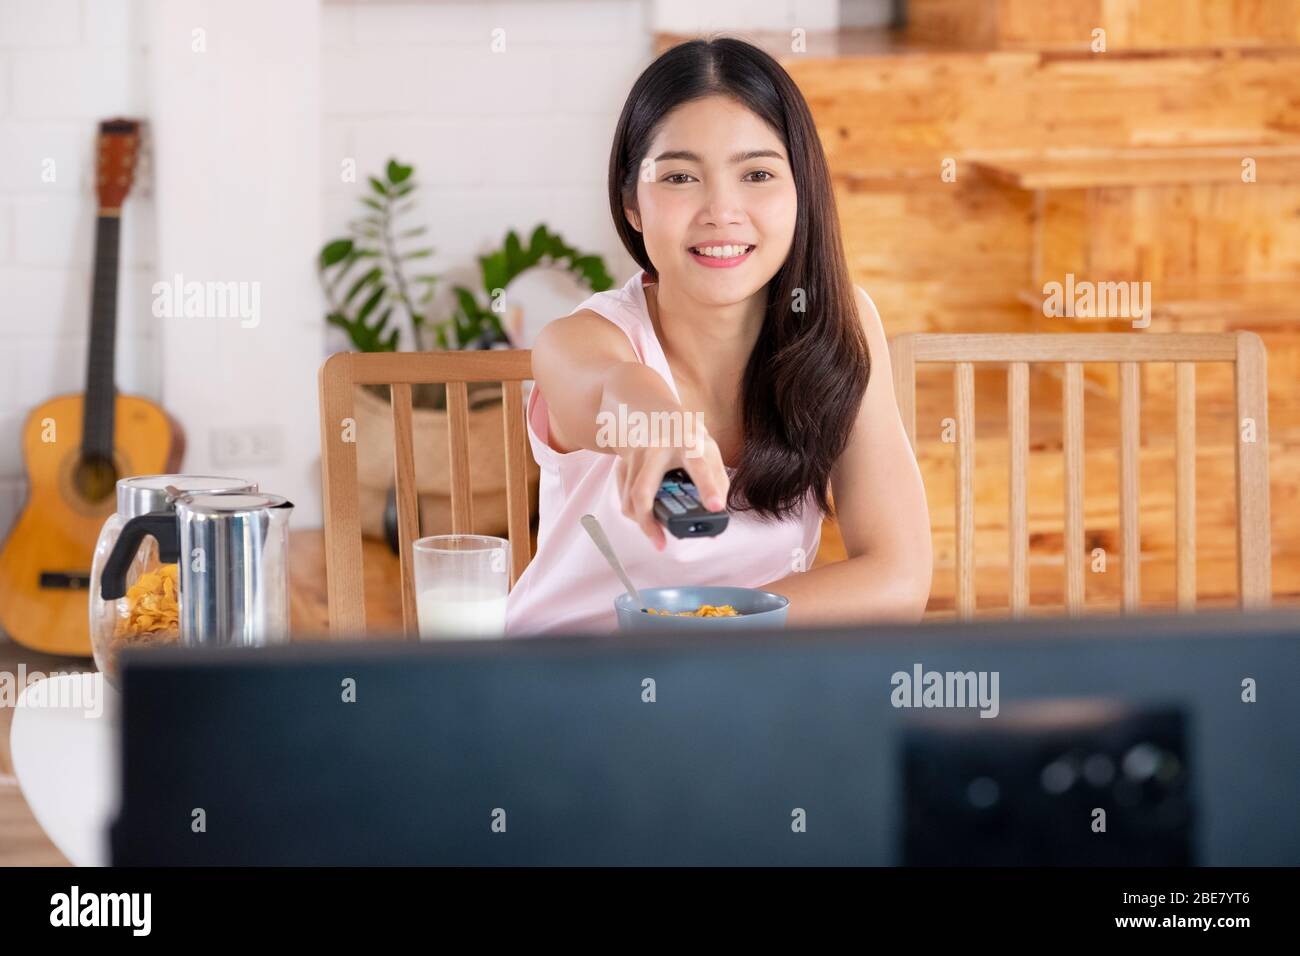 asiatische Frau watchcing tv auf Anfrage und verwenden Fernbedienung ändern Fernsehsender zum Frühstück am Morgen Stockfoto